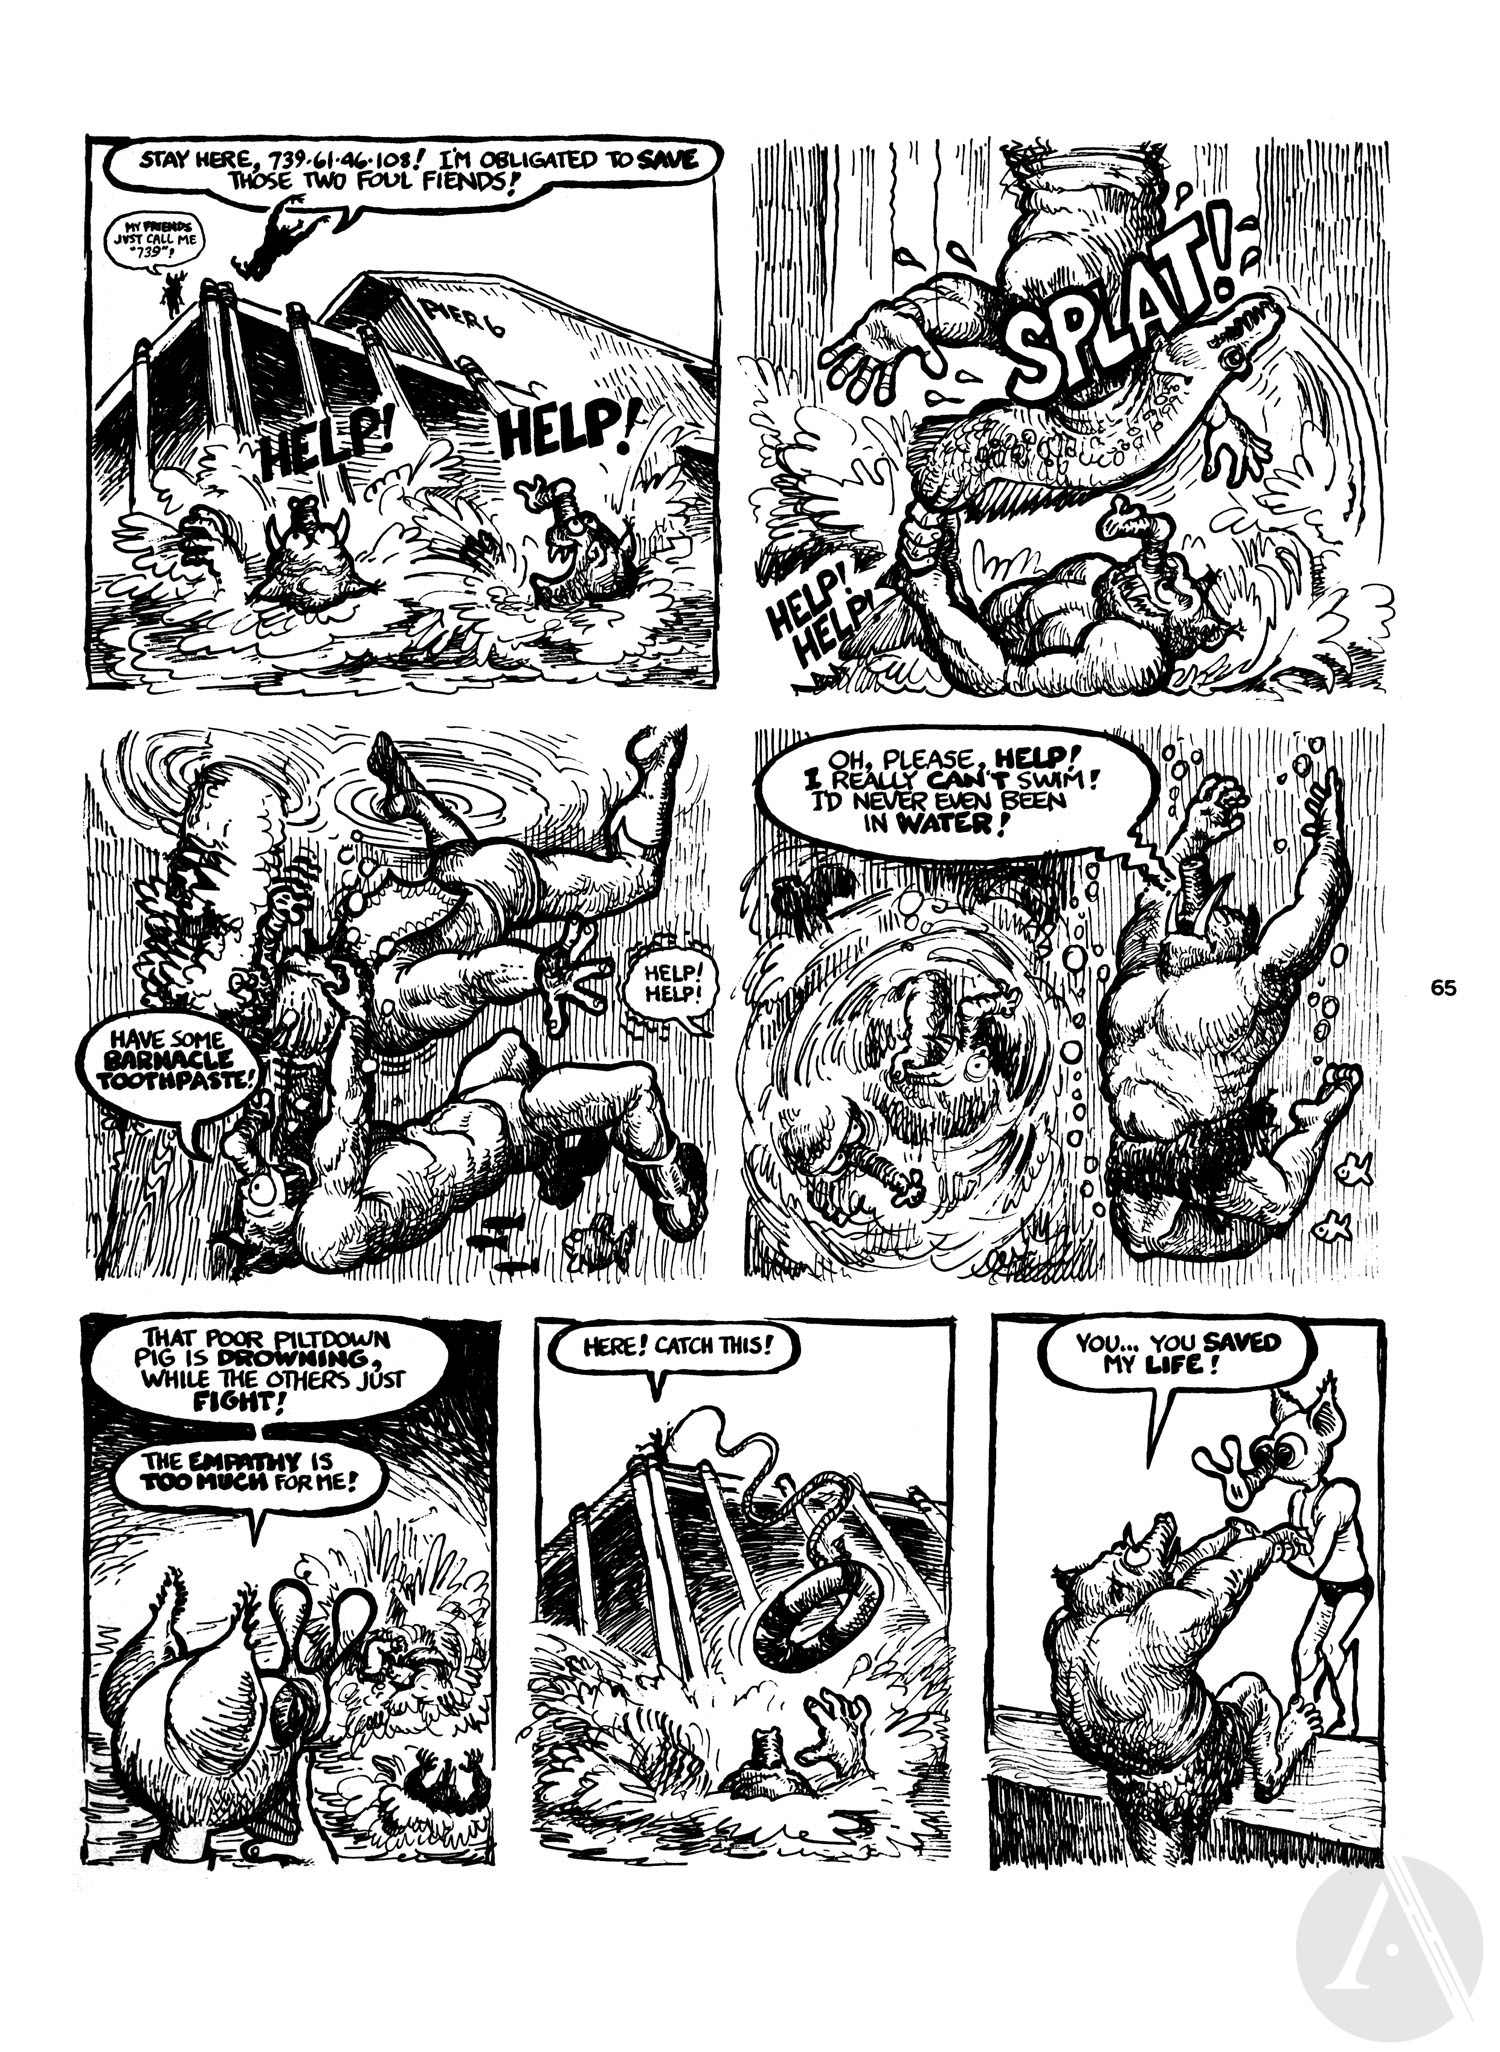 Read online Wonder Wart-Hog comic -  Issue #1 - 65